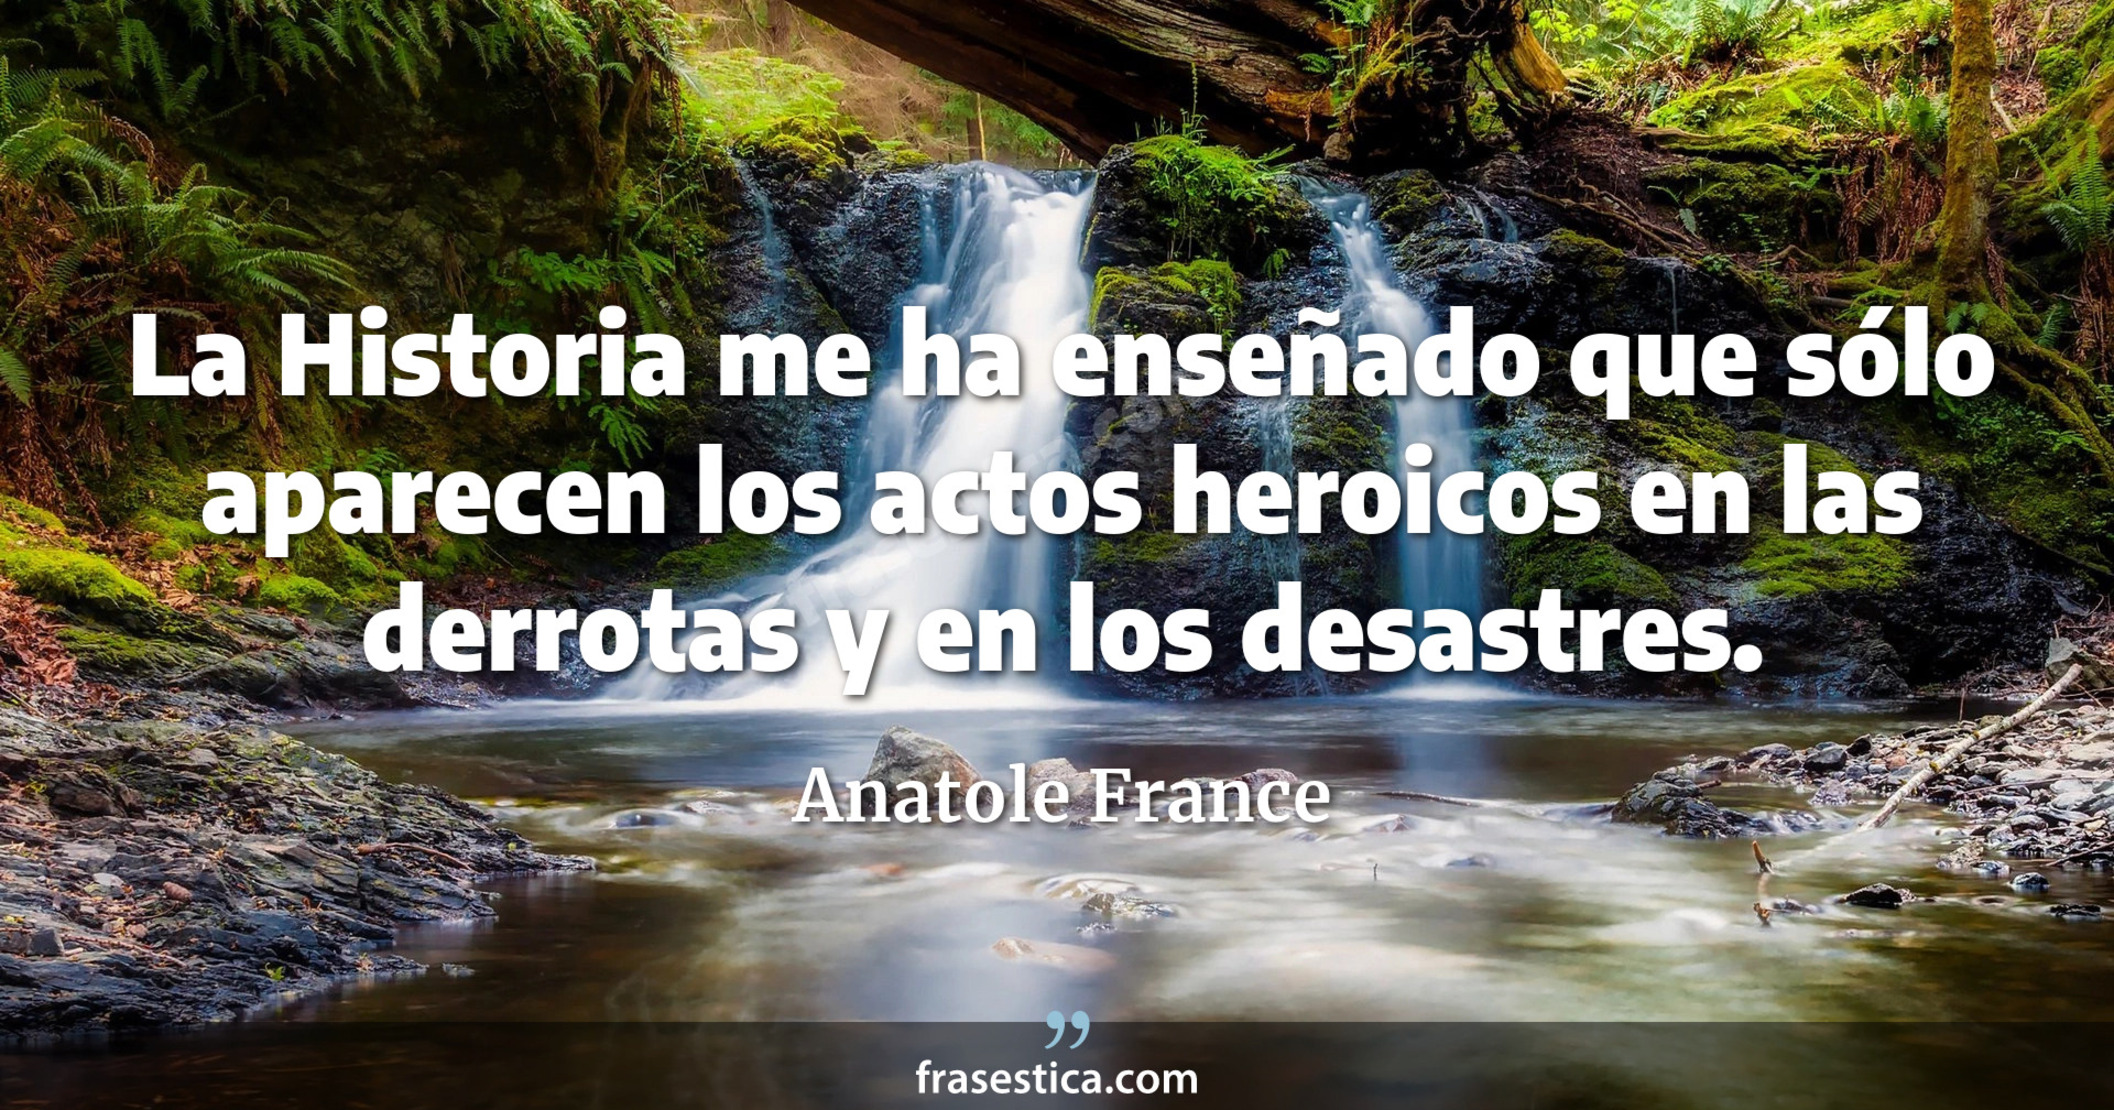 La Historia me ha enseñado que sólo aparecen los actos heroicos en las derrotas y en los desastres. - Anatole France